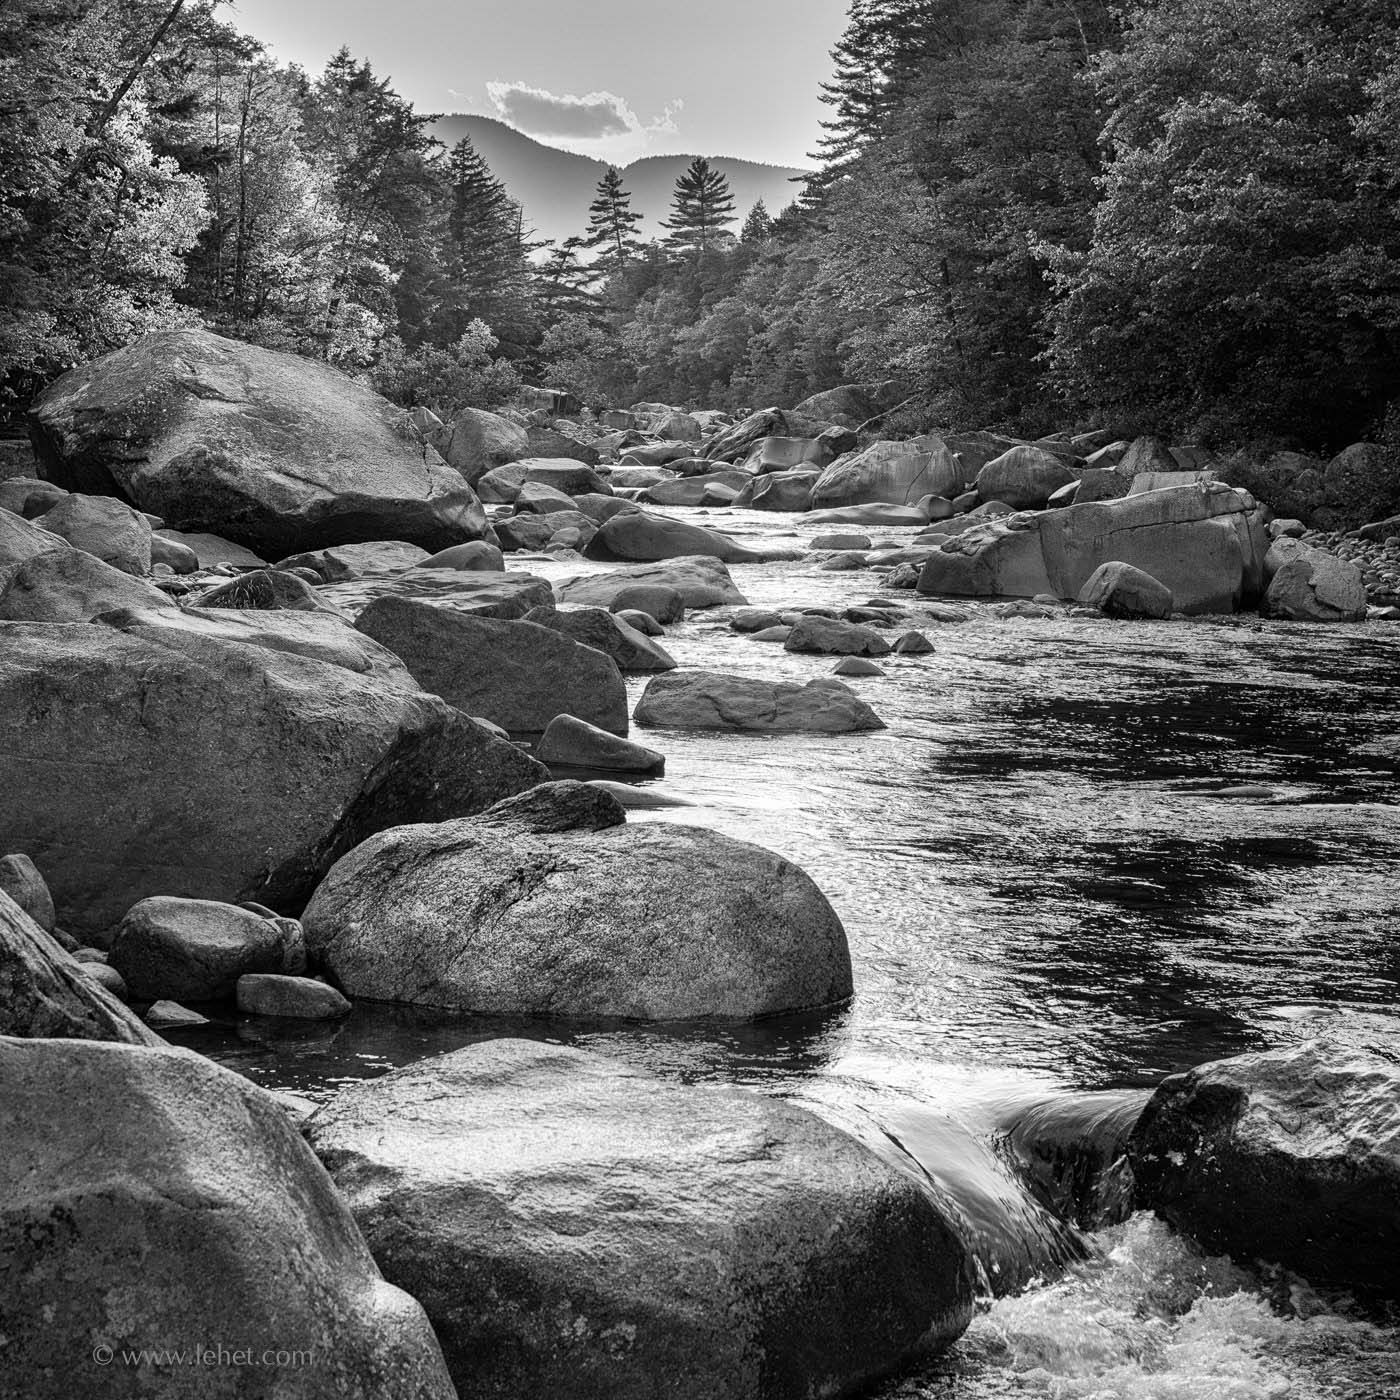 River Rocks, Swift River, White Mountains, NH
